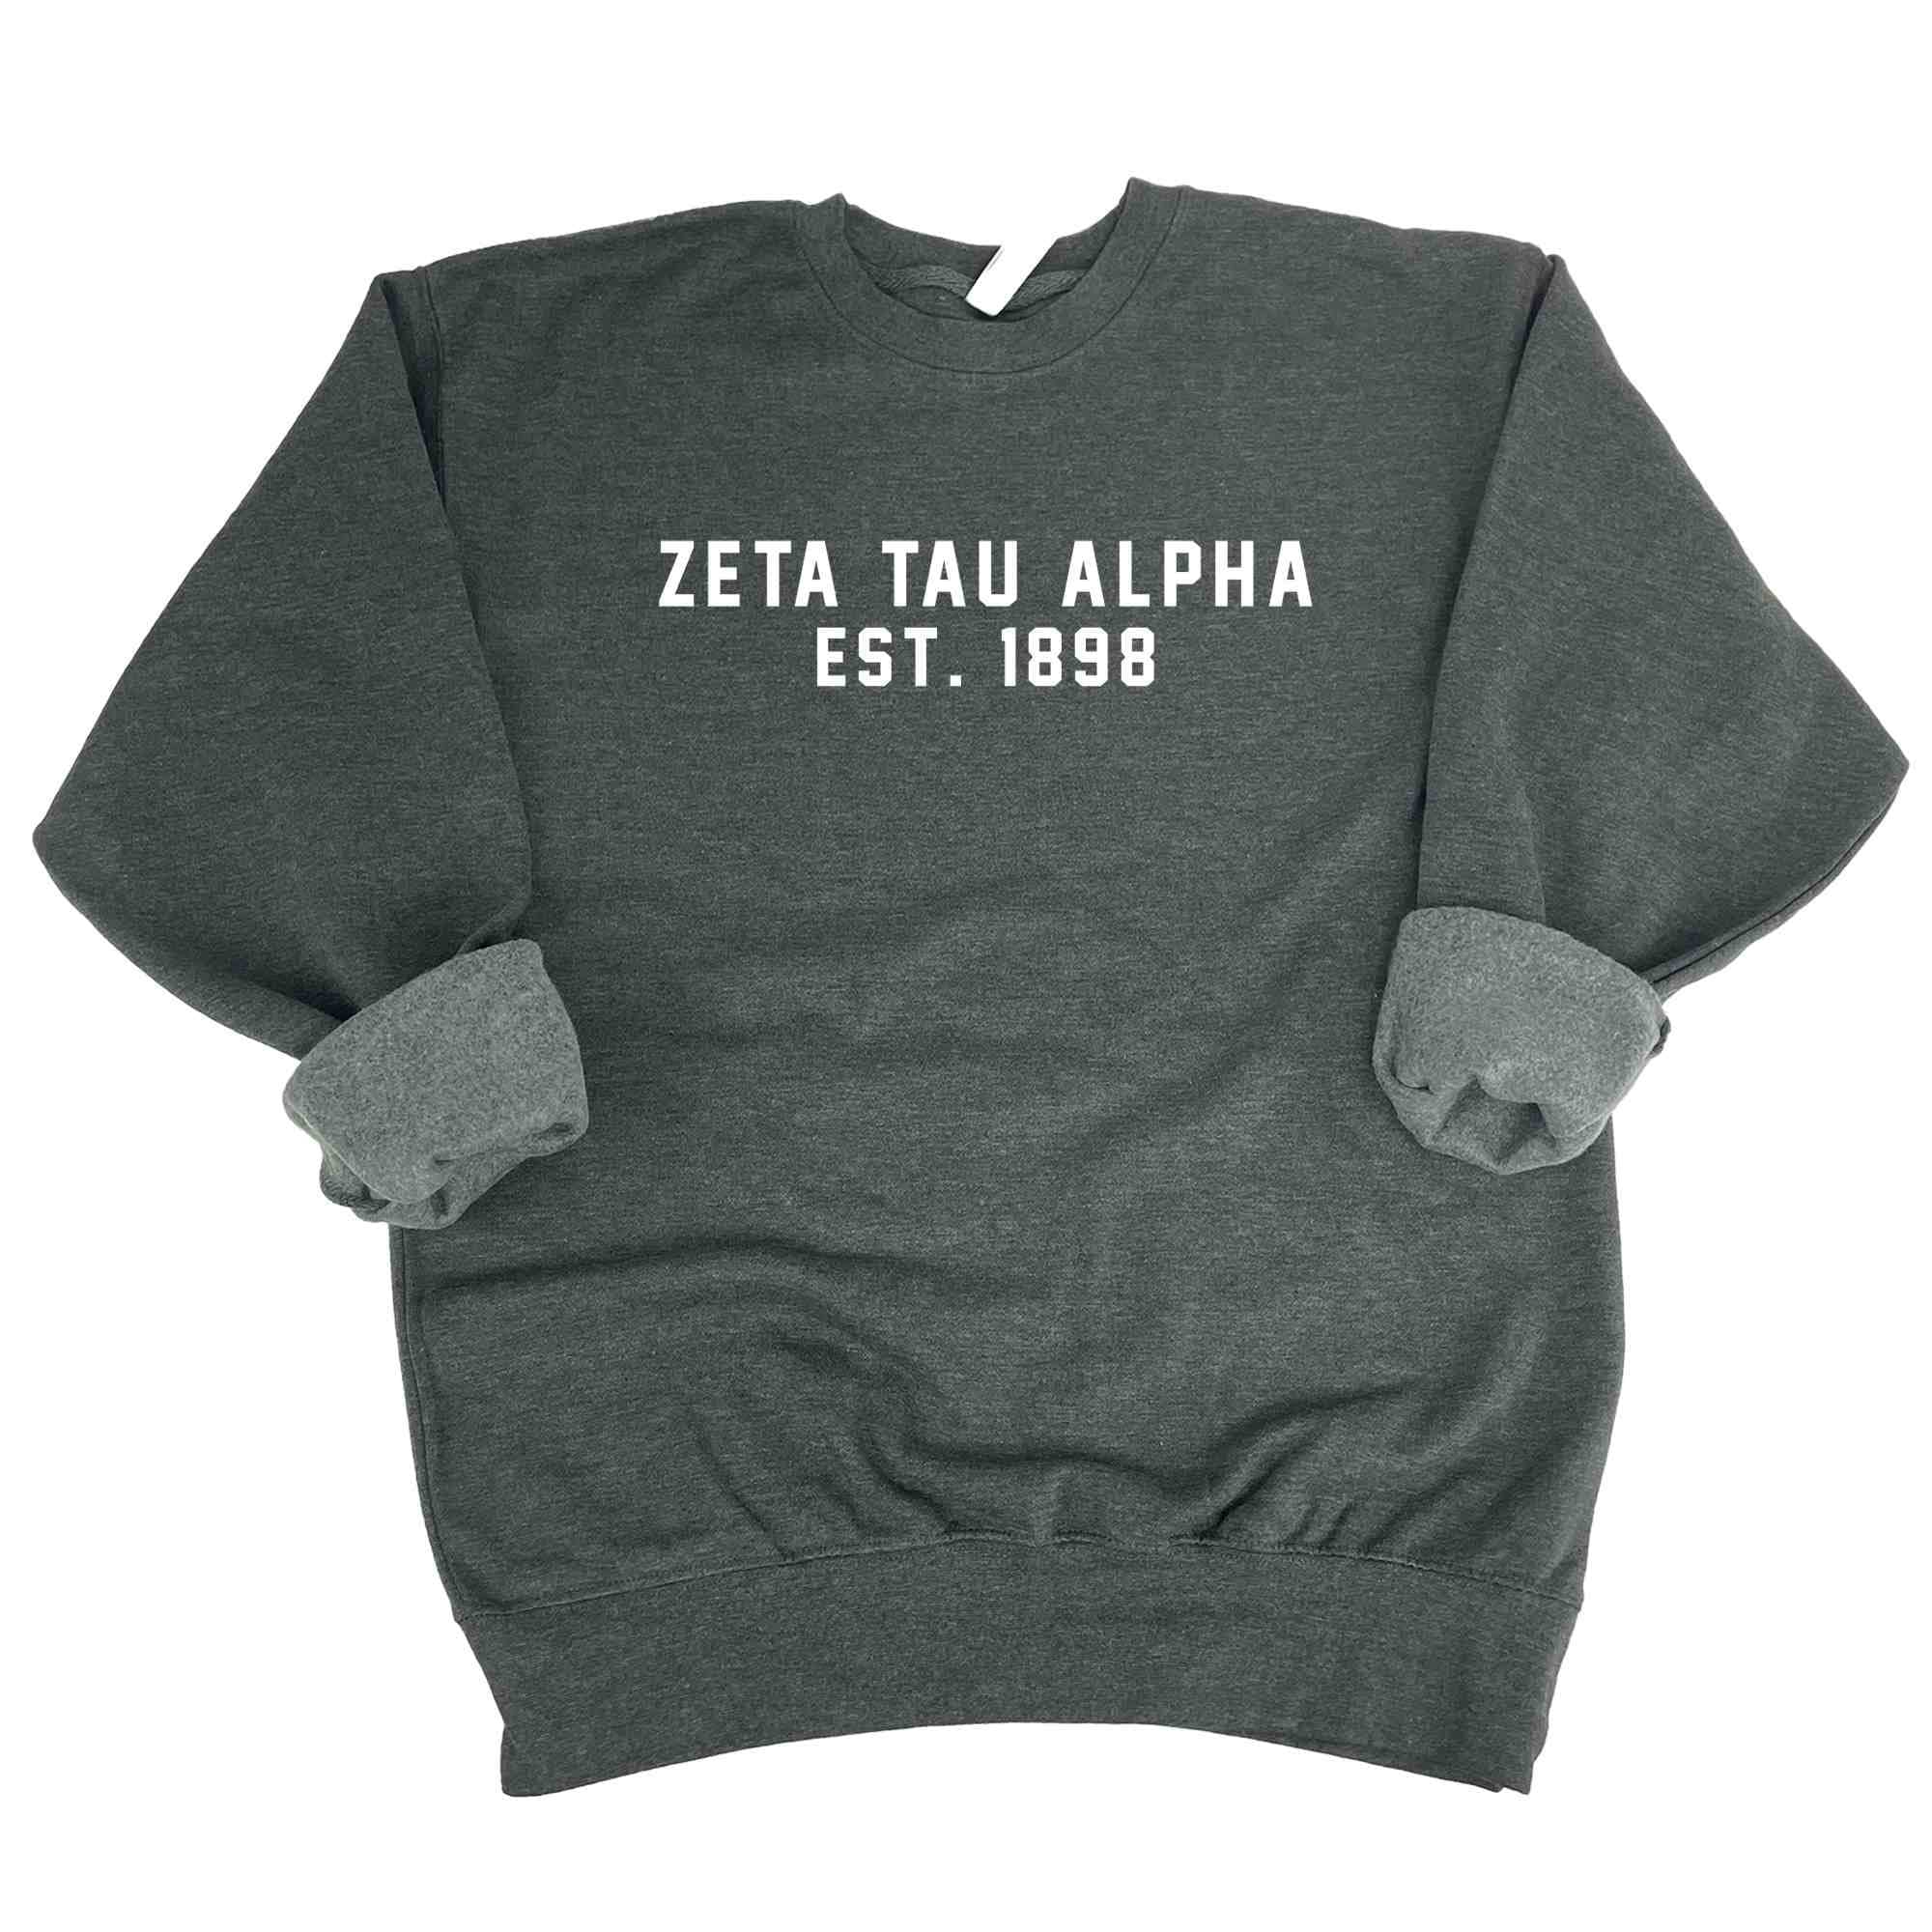 Zeta Tau Alpha Est. 1898 Sweatshirt